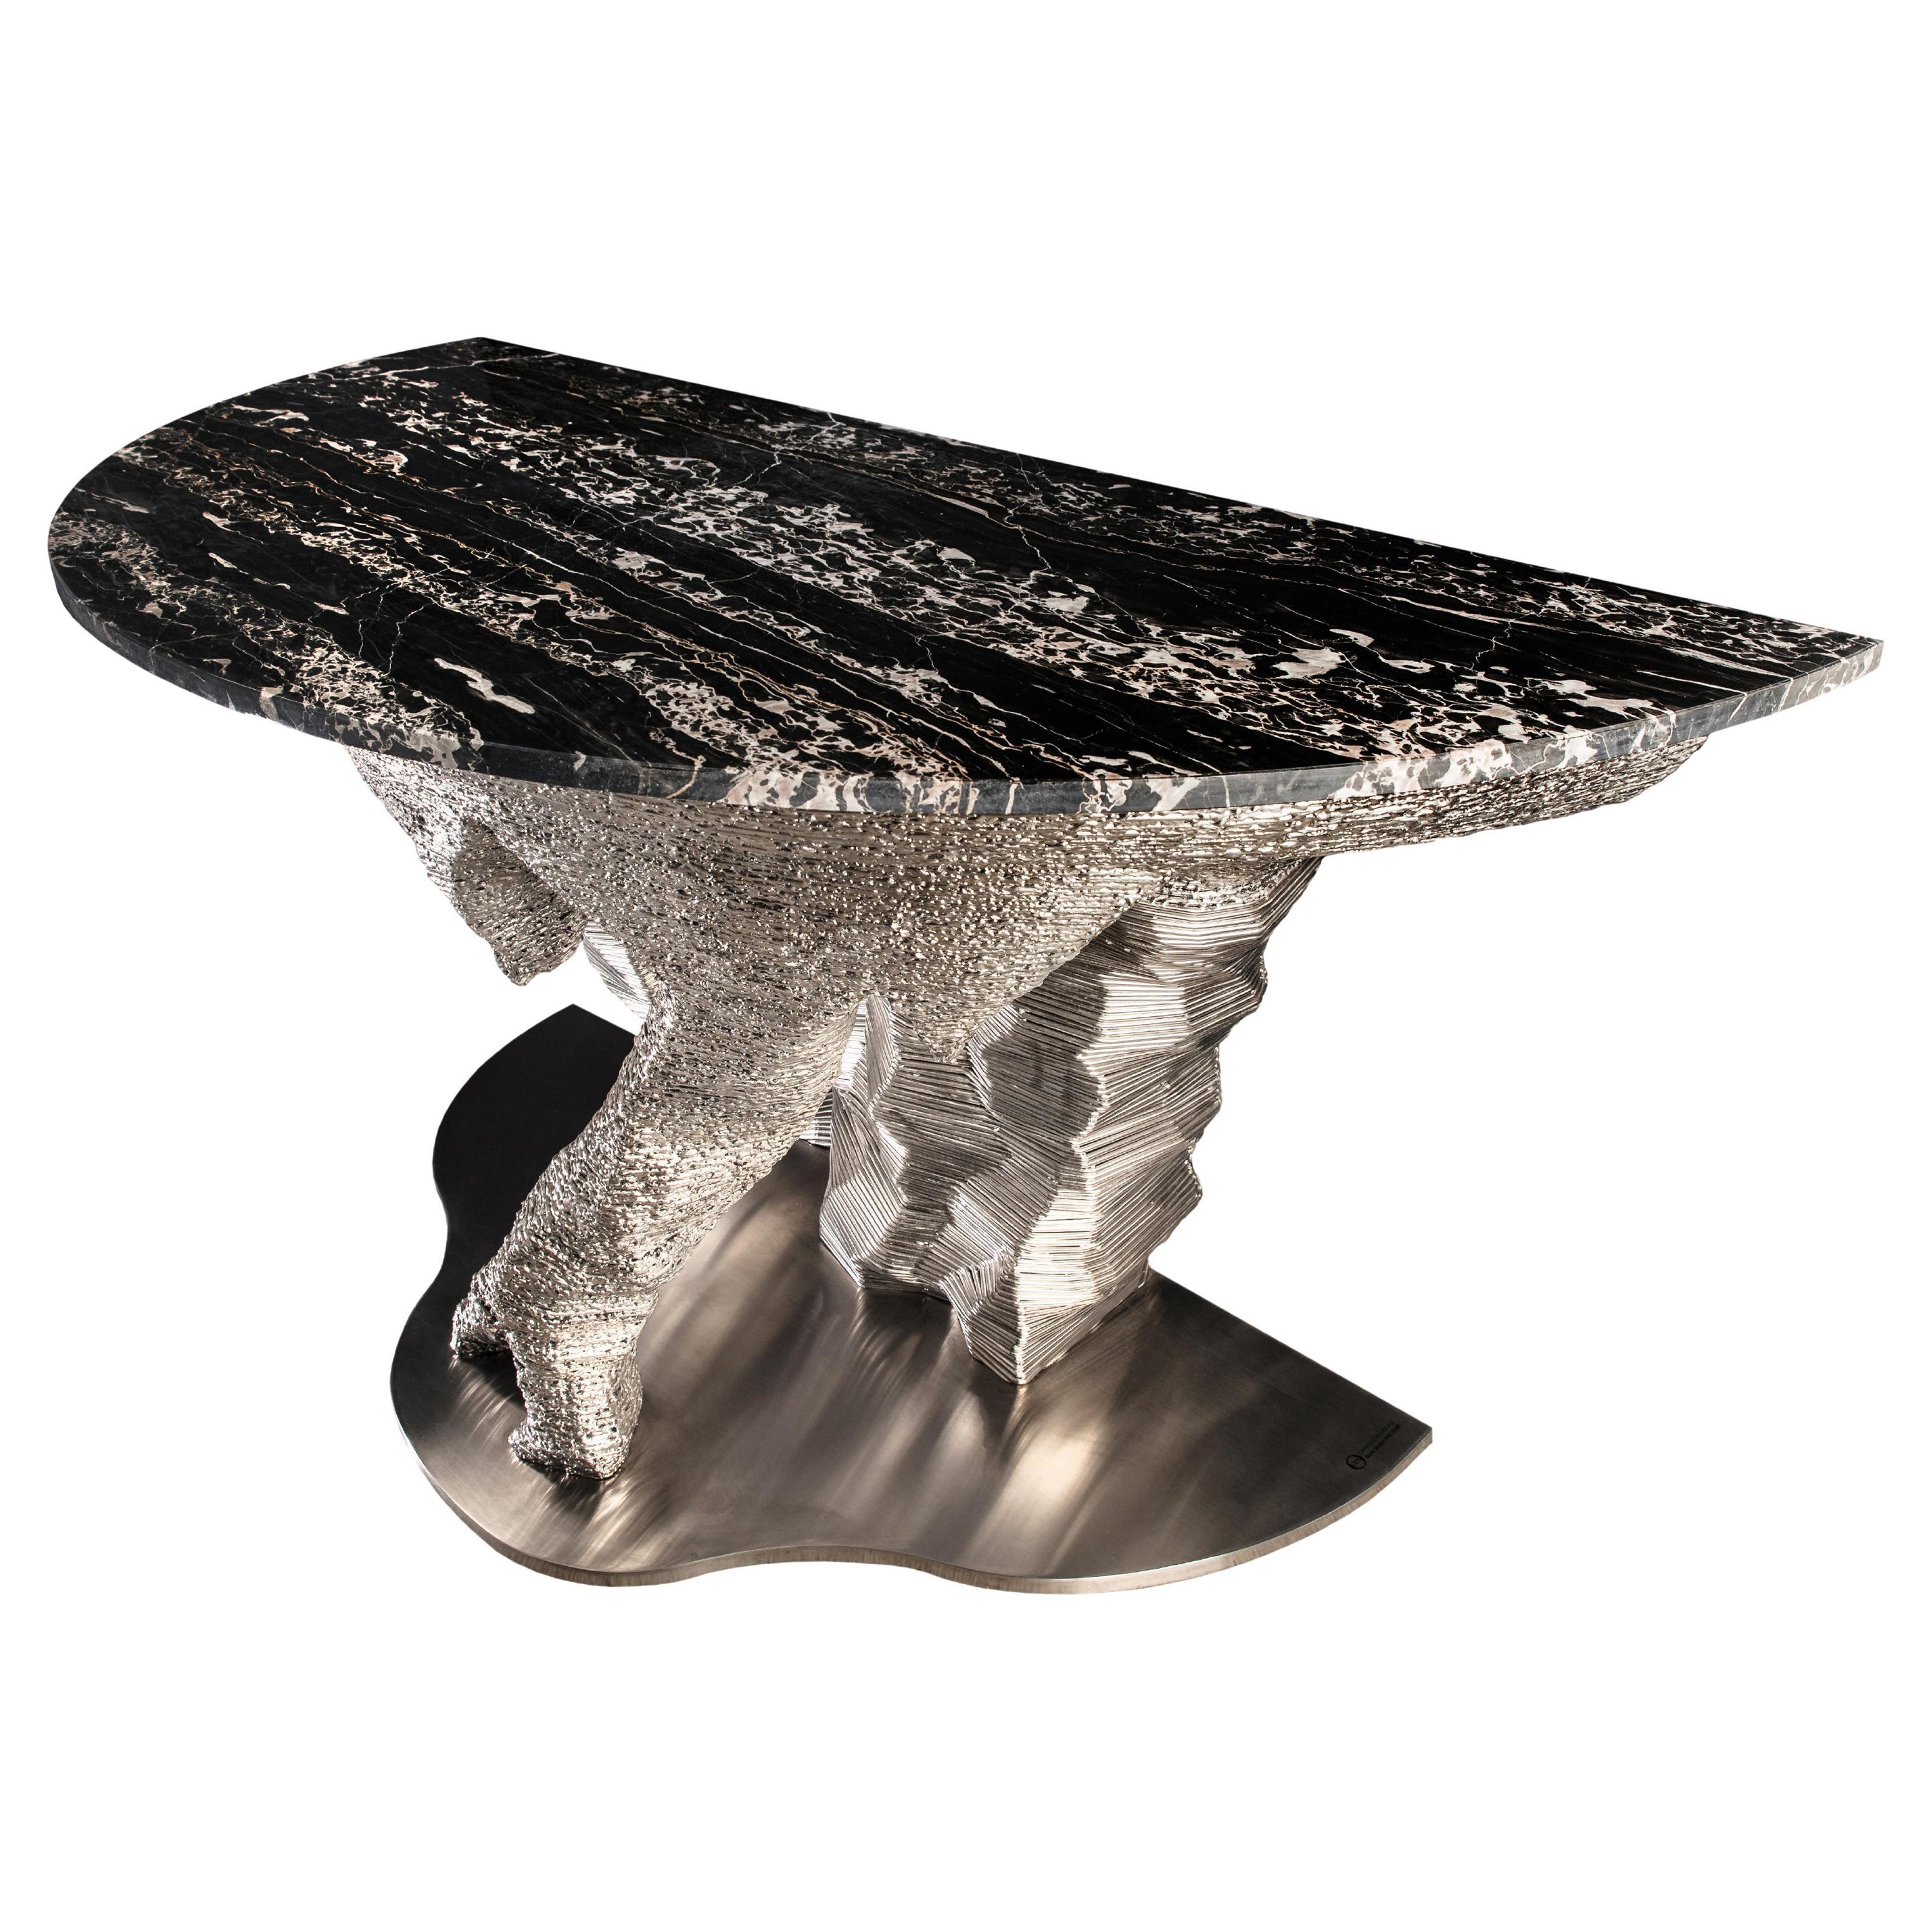 Portoro Marble "SteelMoon Meteorite" design by GiòPozzi for Officina della Scala